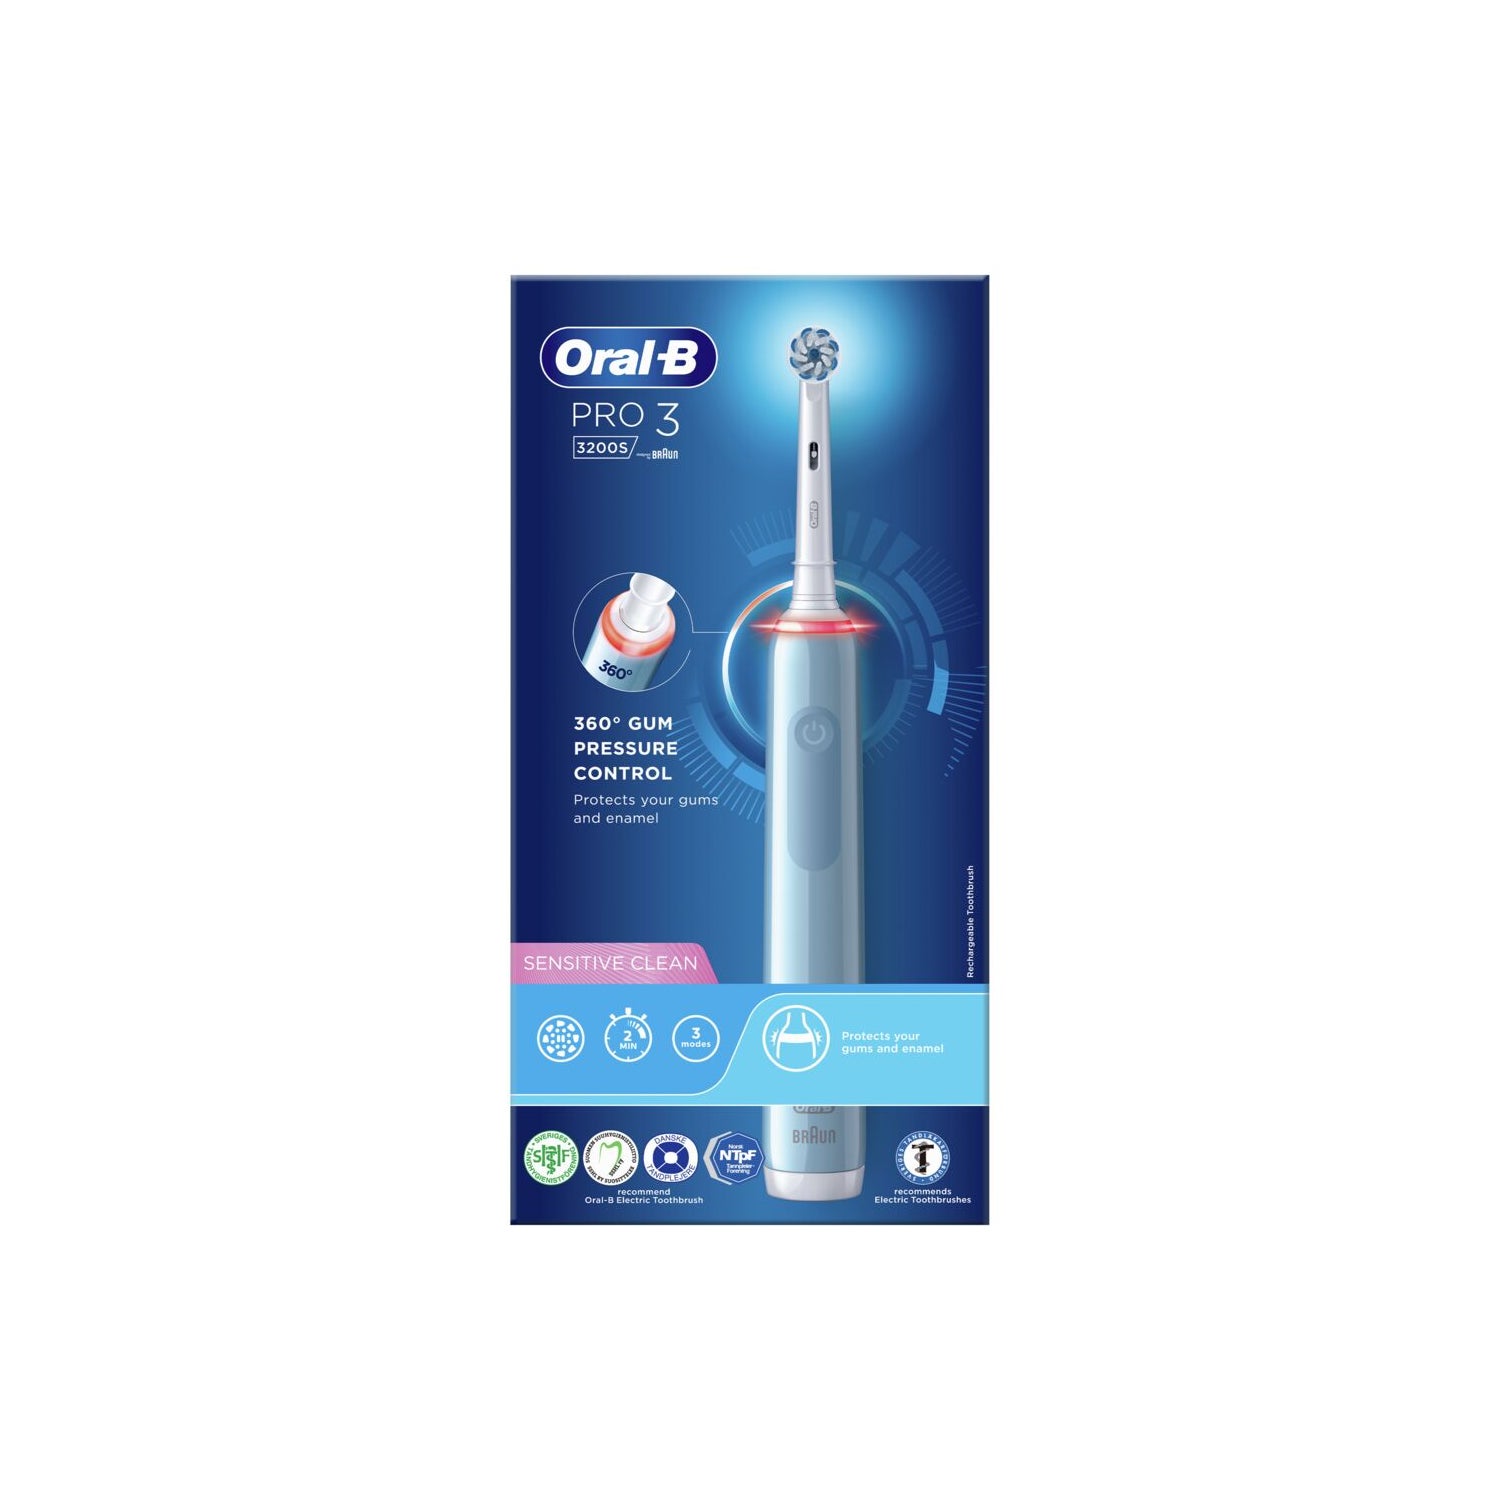 Oral-B Cepillo Eléctrico Pack Limpieza y Protección Profesional 3